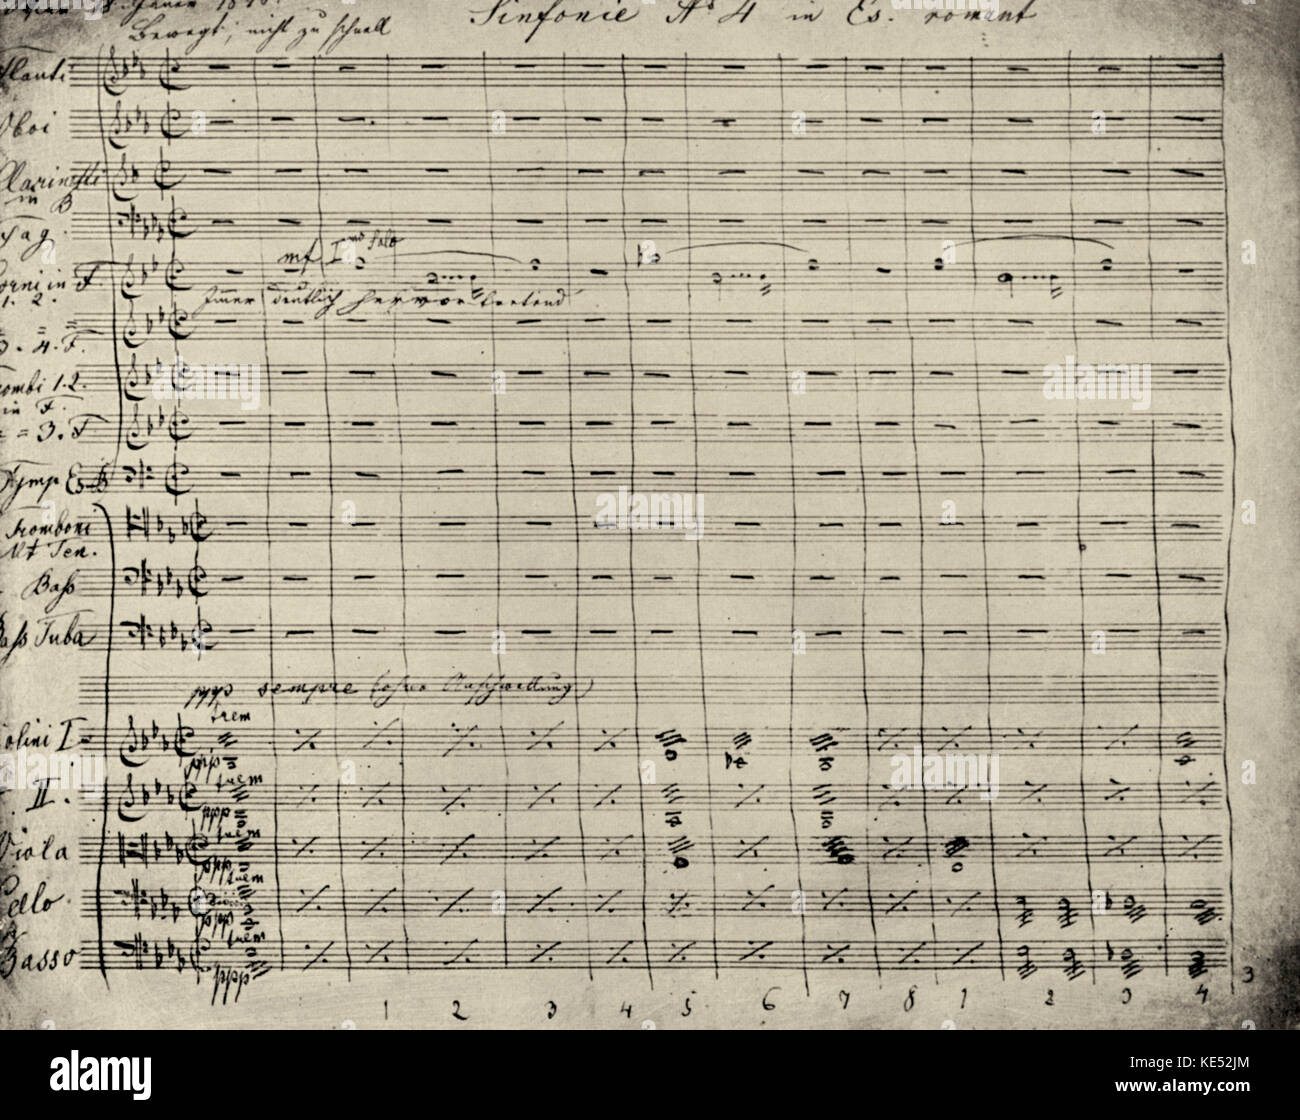 Anton Bruckner 's Sinfonía núm. 4 de puntuación. A partir de la versión final de la sinfonía. AB: compositor austríaco, el 4 de septiembre de 1824 - 11 de octubre de 1896. Foto de stock